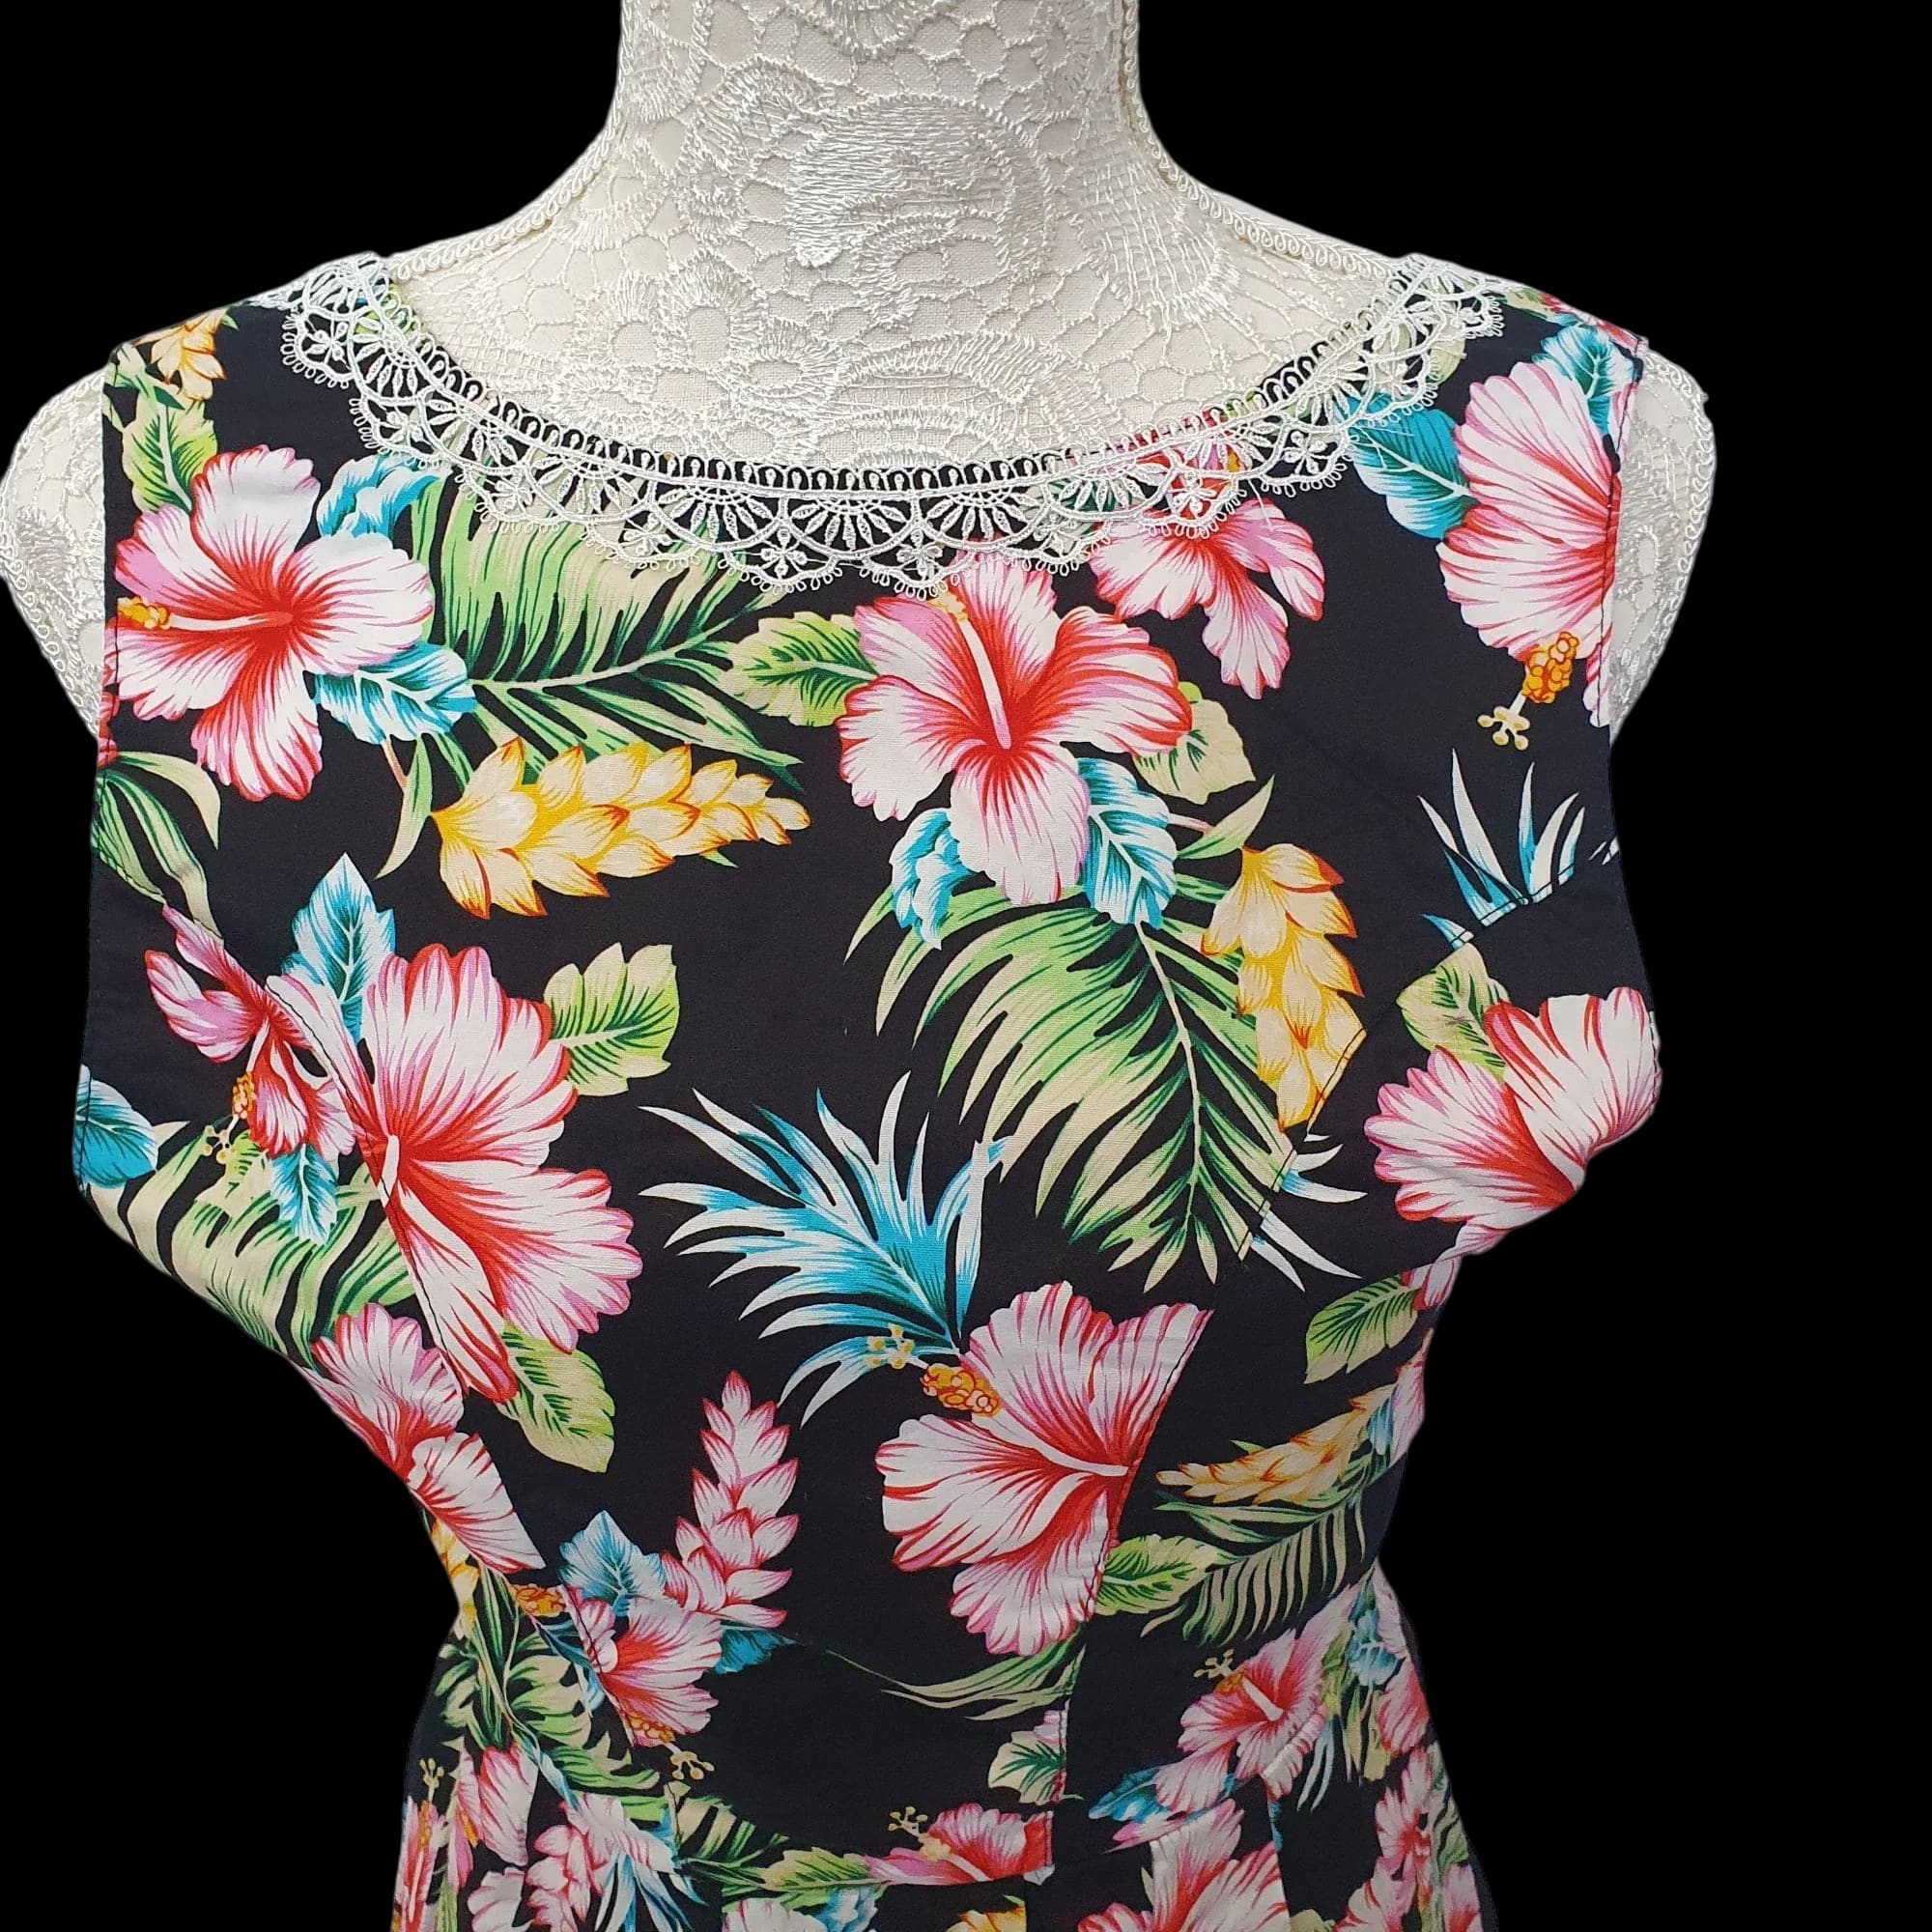 Vintage Floral Handmade Summer Dress Lace Detailing UK 10